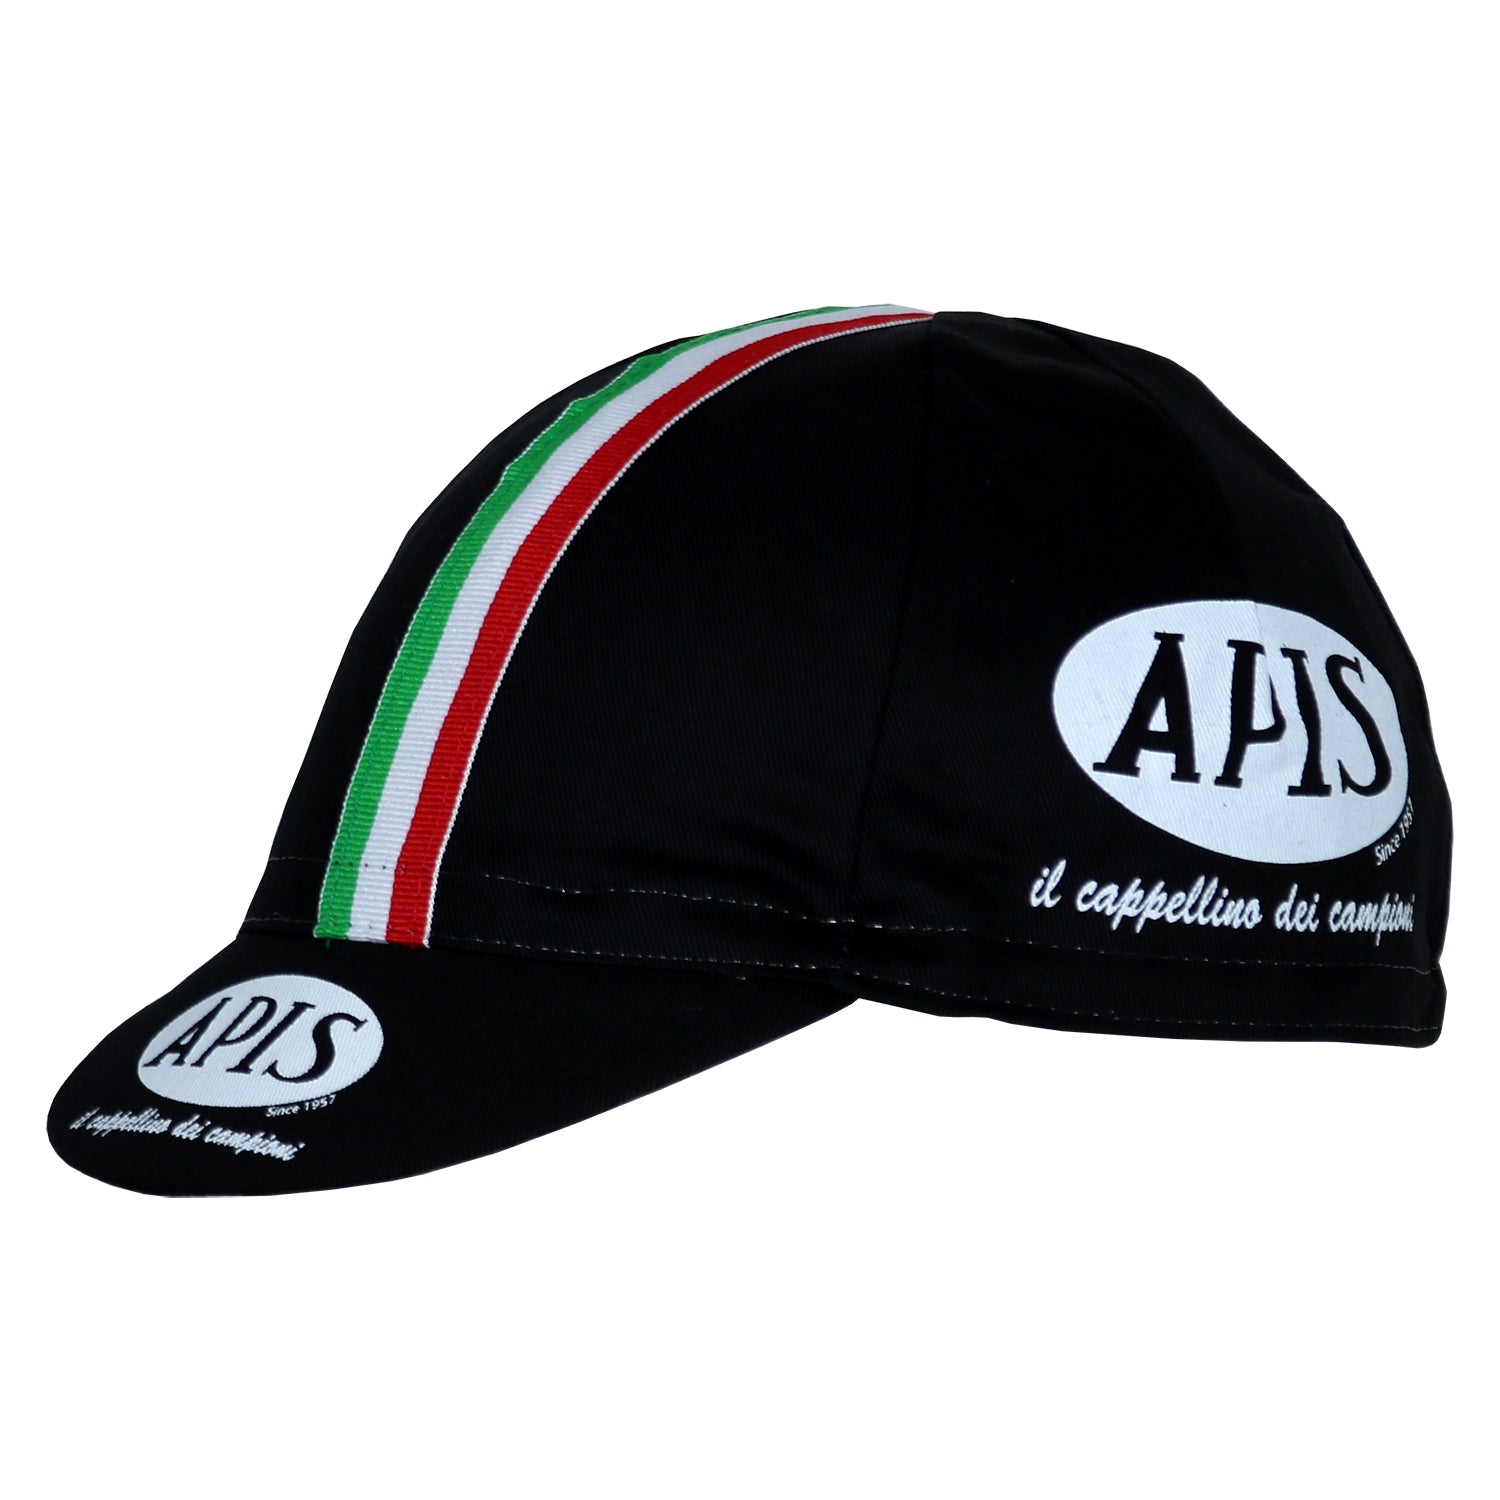 Black / Italian Cycling Cap